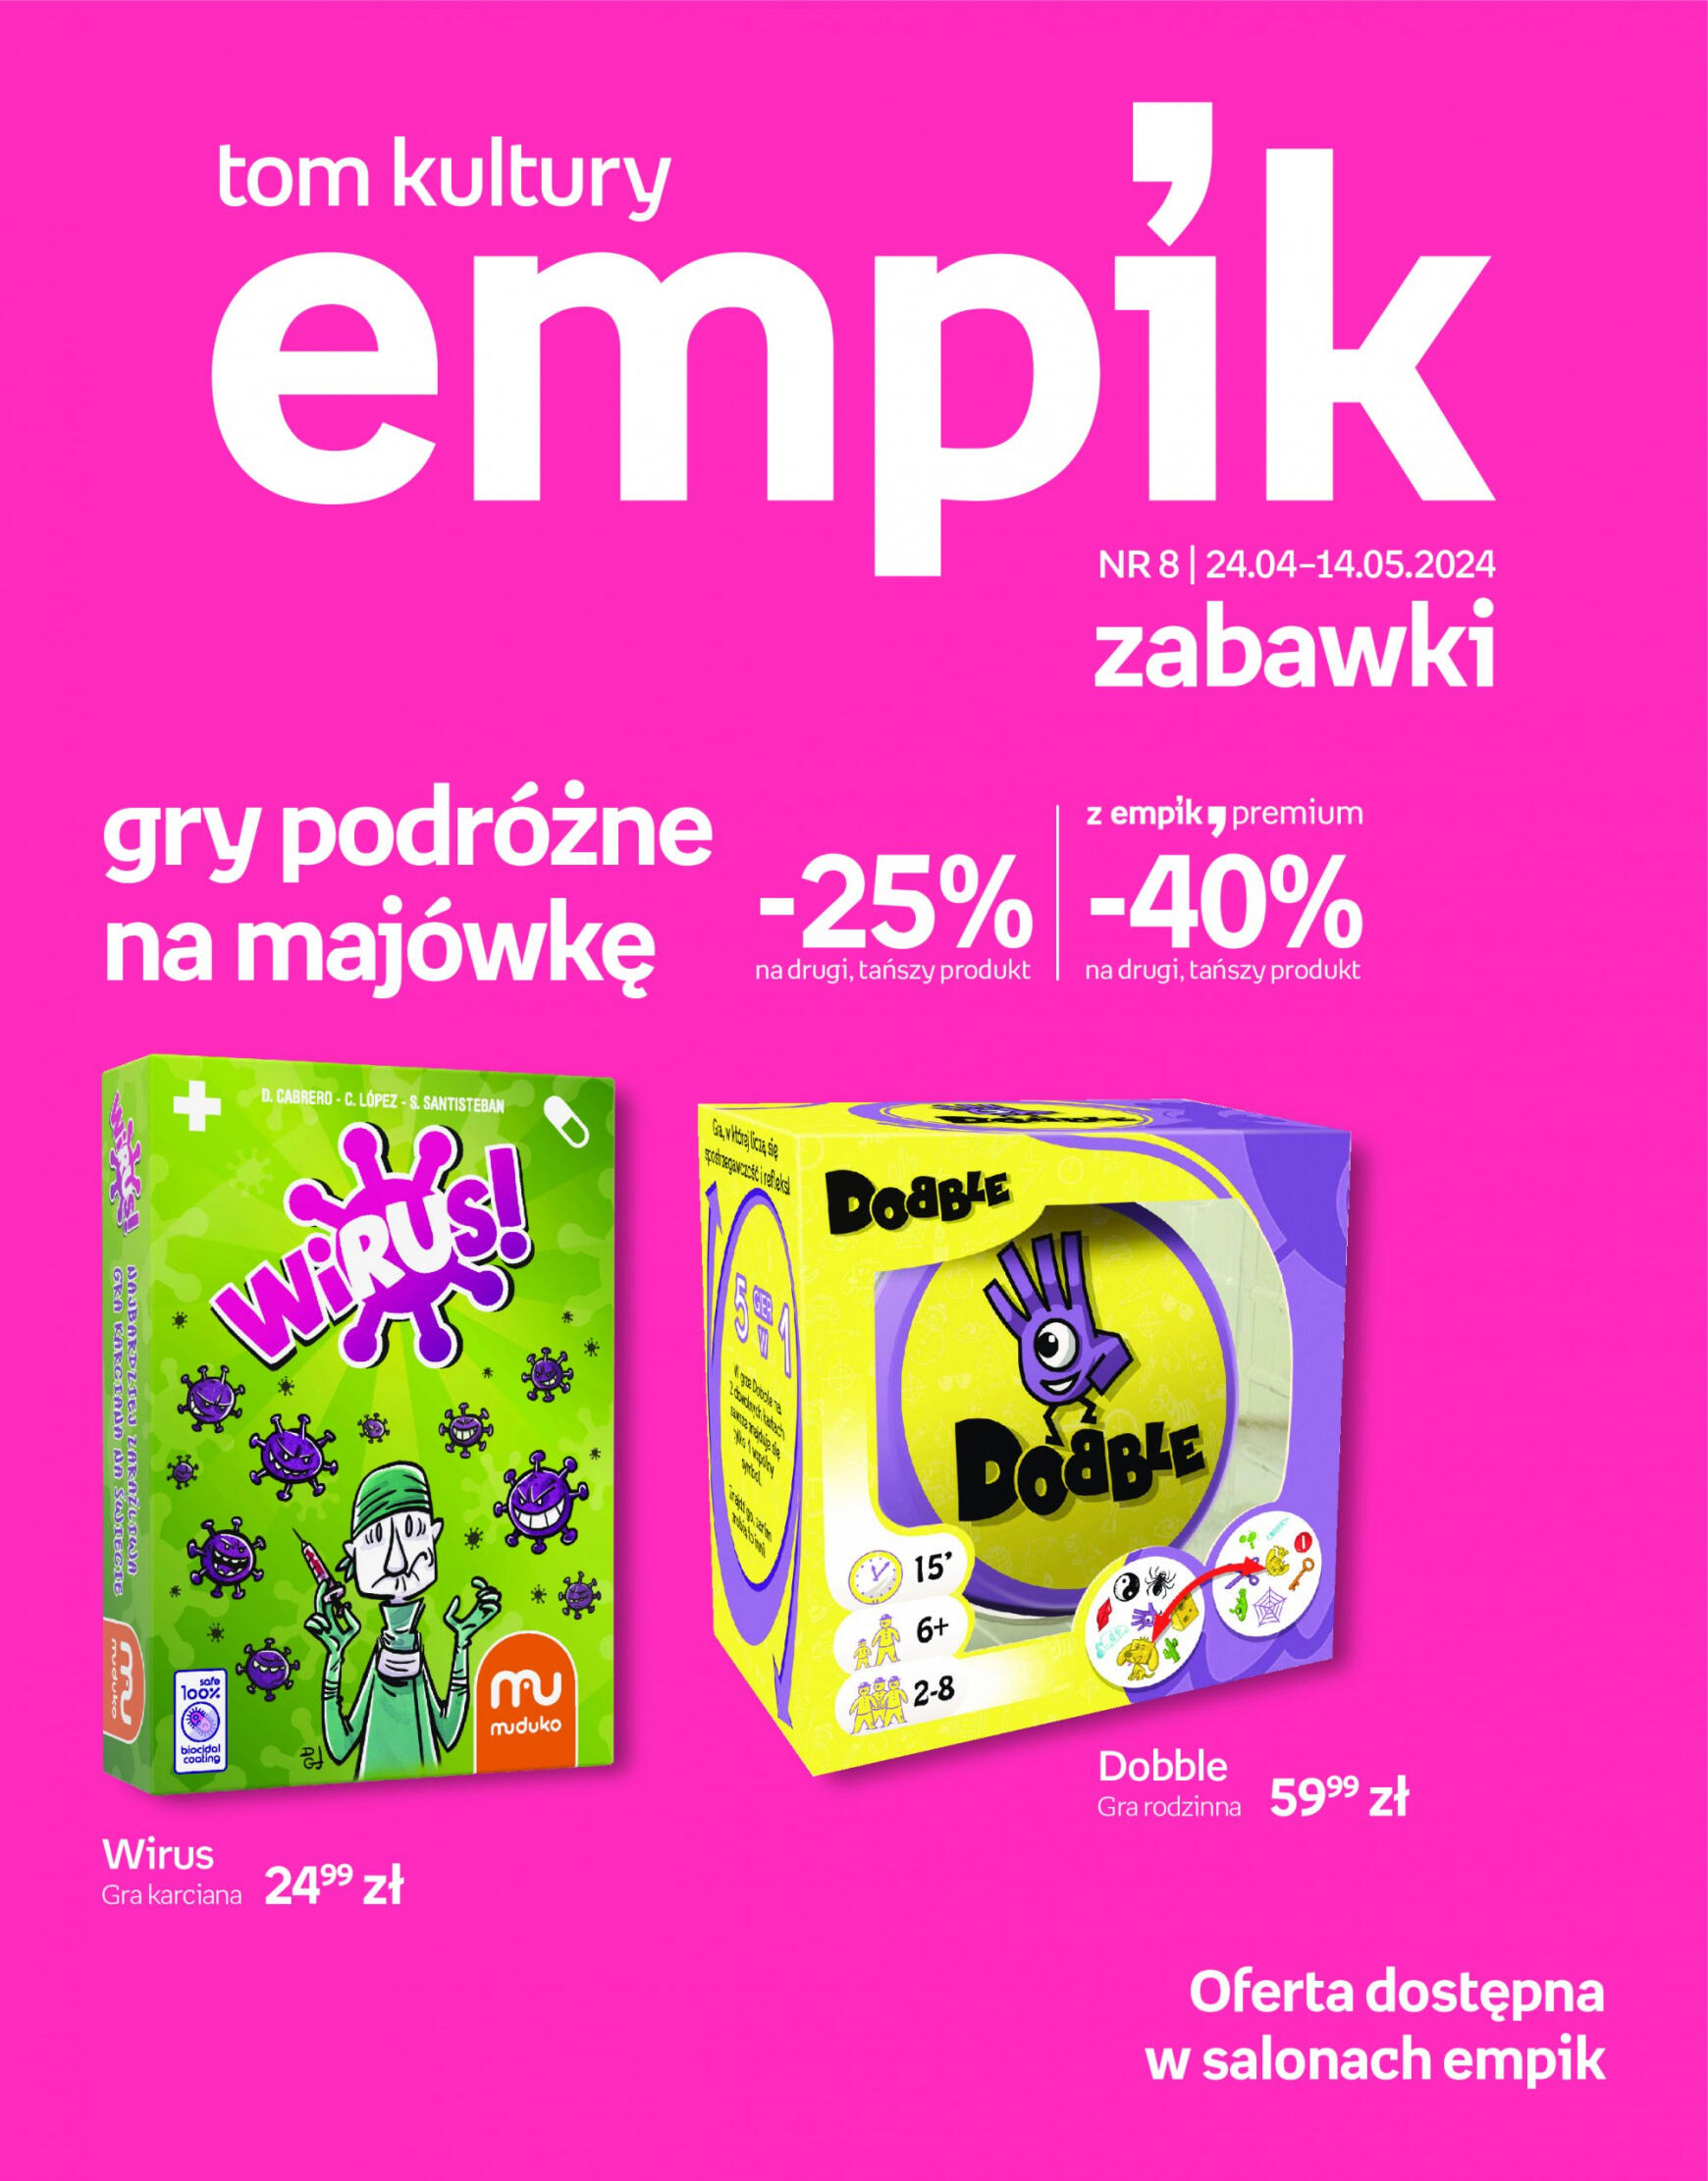 empik - Empik - Zabawki gazetka aktualna ważna od 24.04. - 14.05.